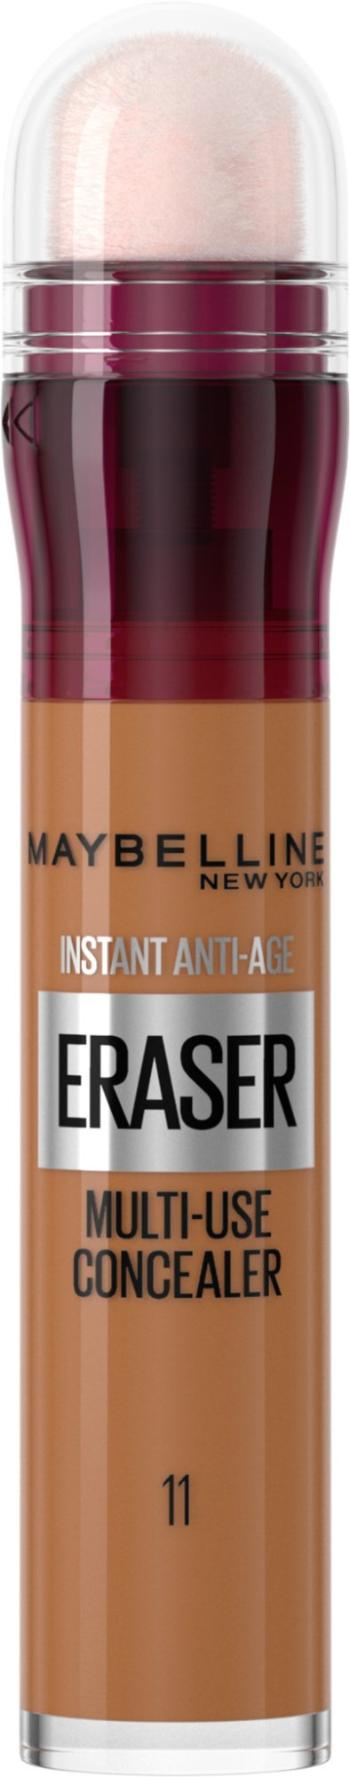 Maybelline Instant Eraser korektor 11 Tan 6.8 ml